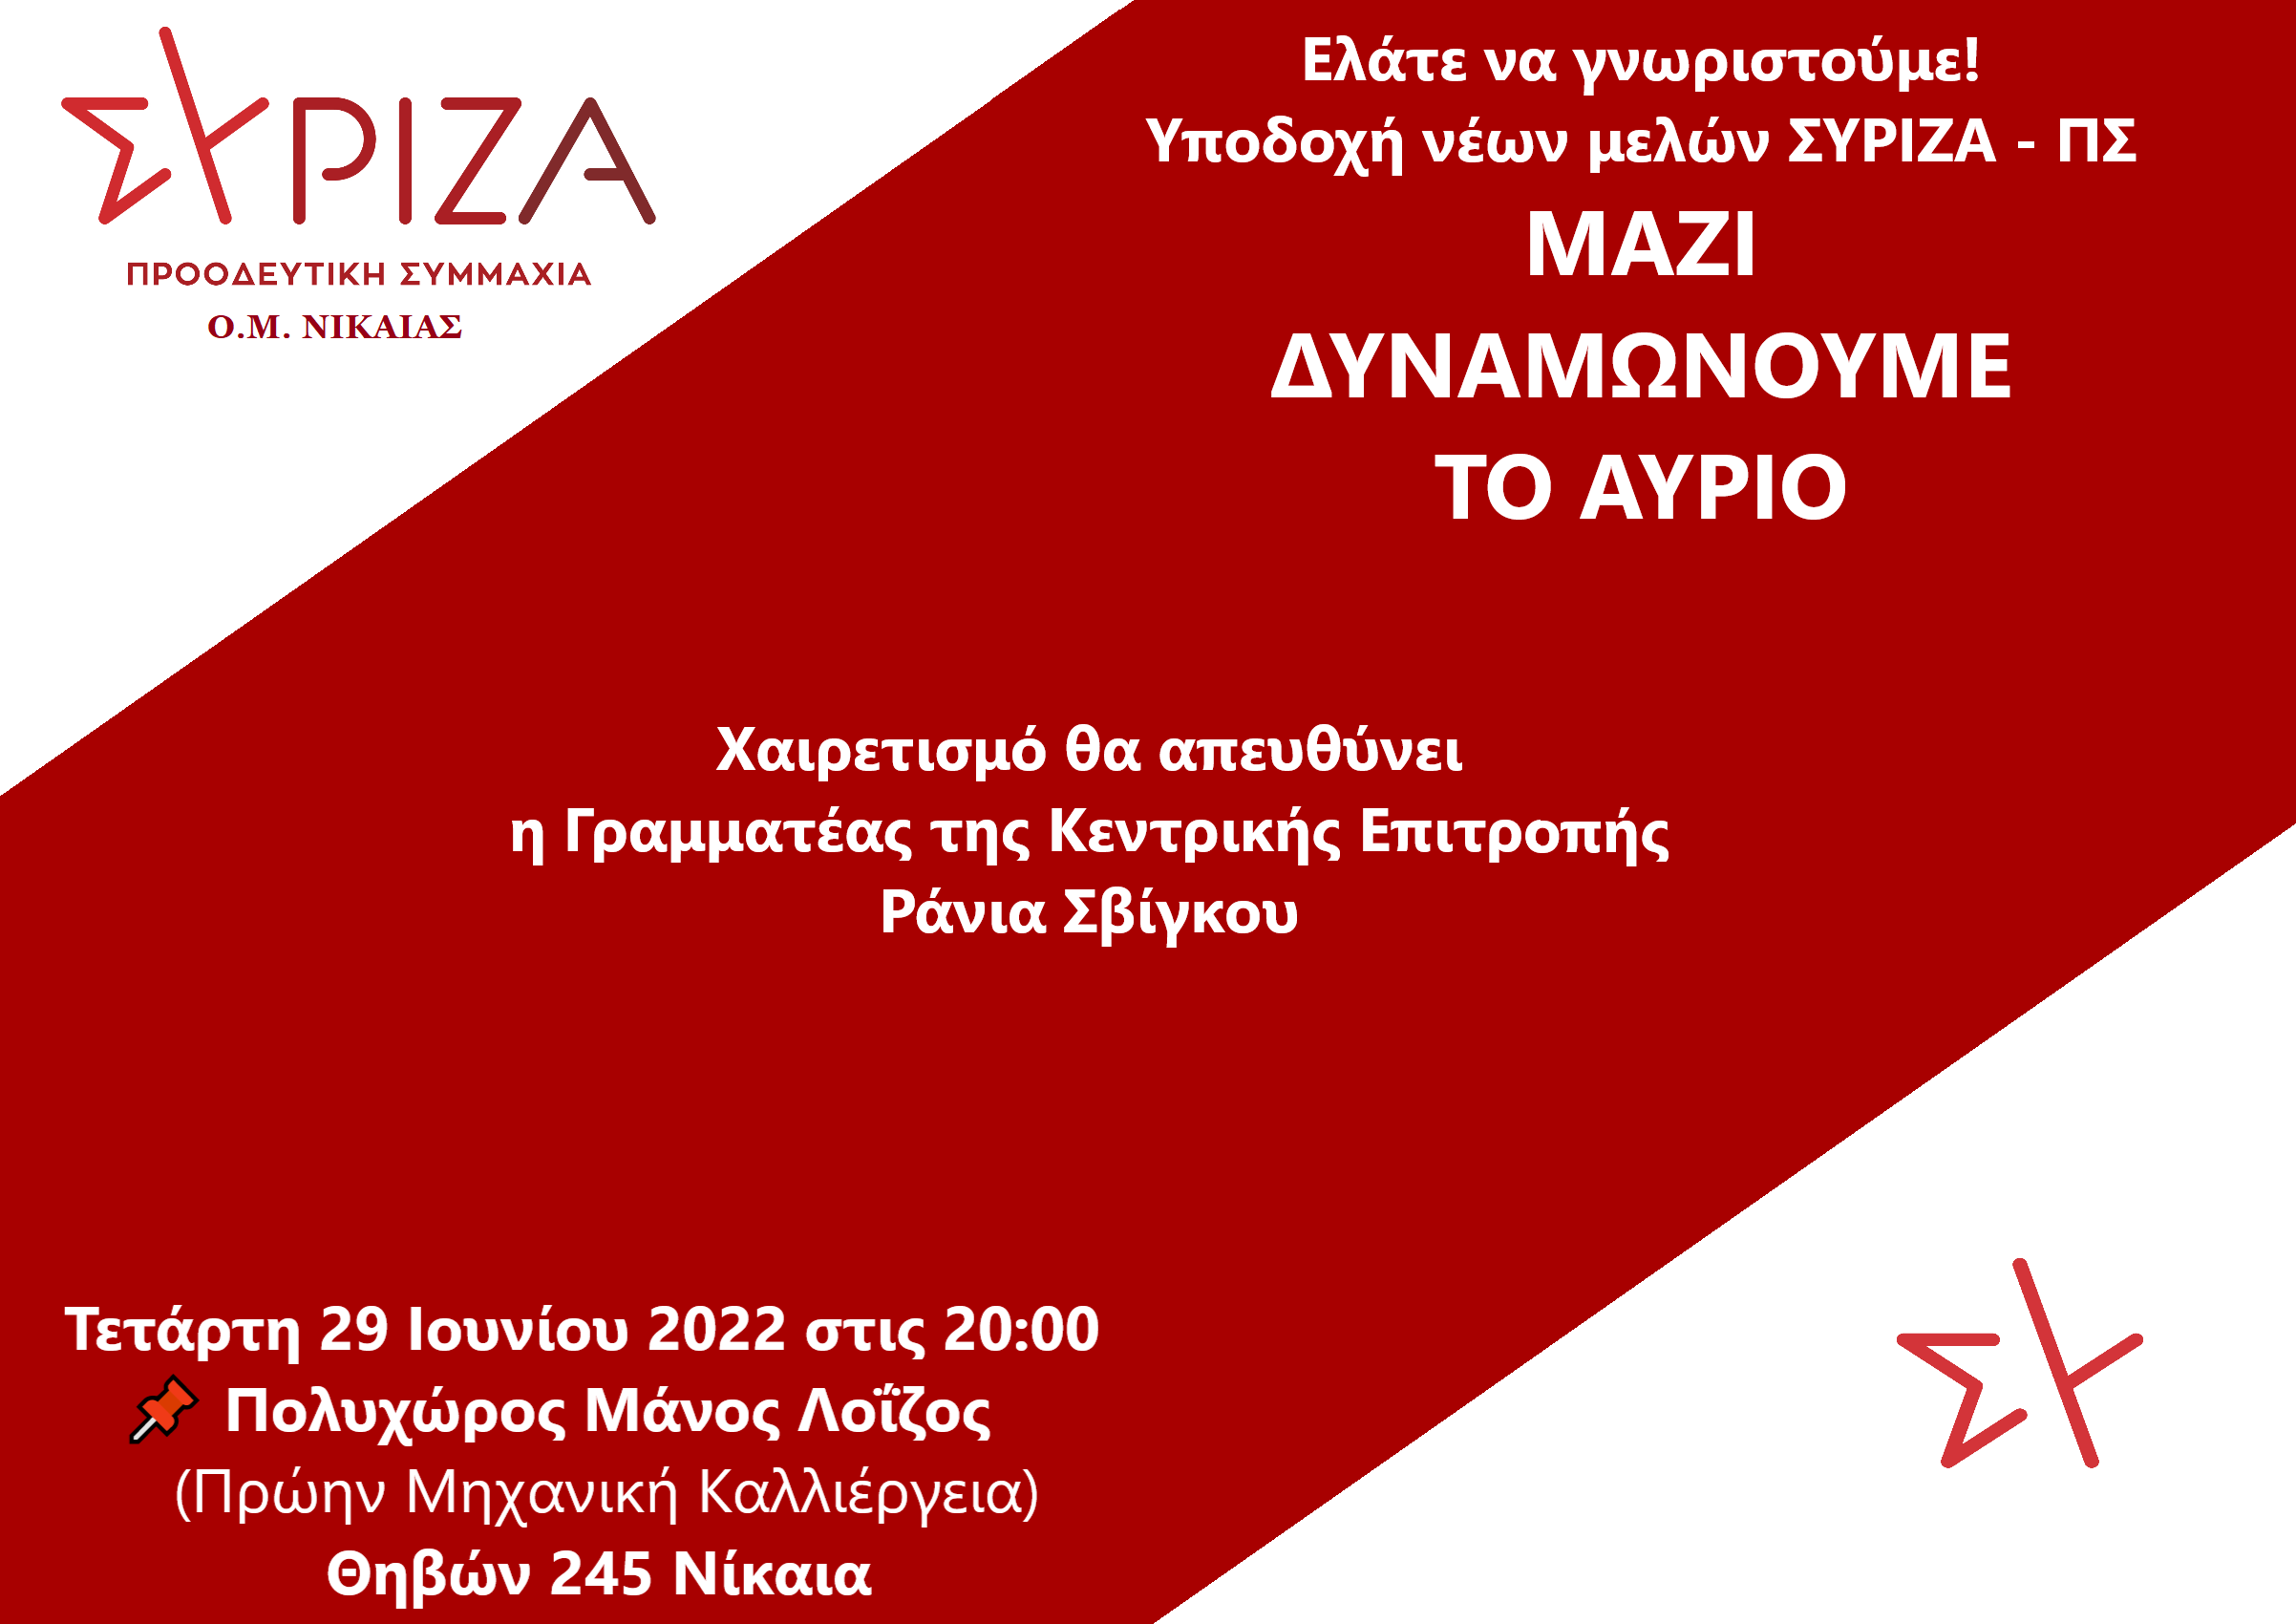 Εκδήλωση Υποδοχής νέων μελών ΣΥΡΙΖΑ - ΠΣ Νίκαιας